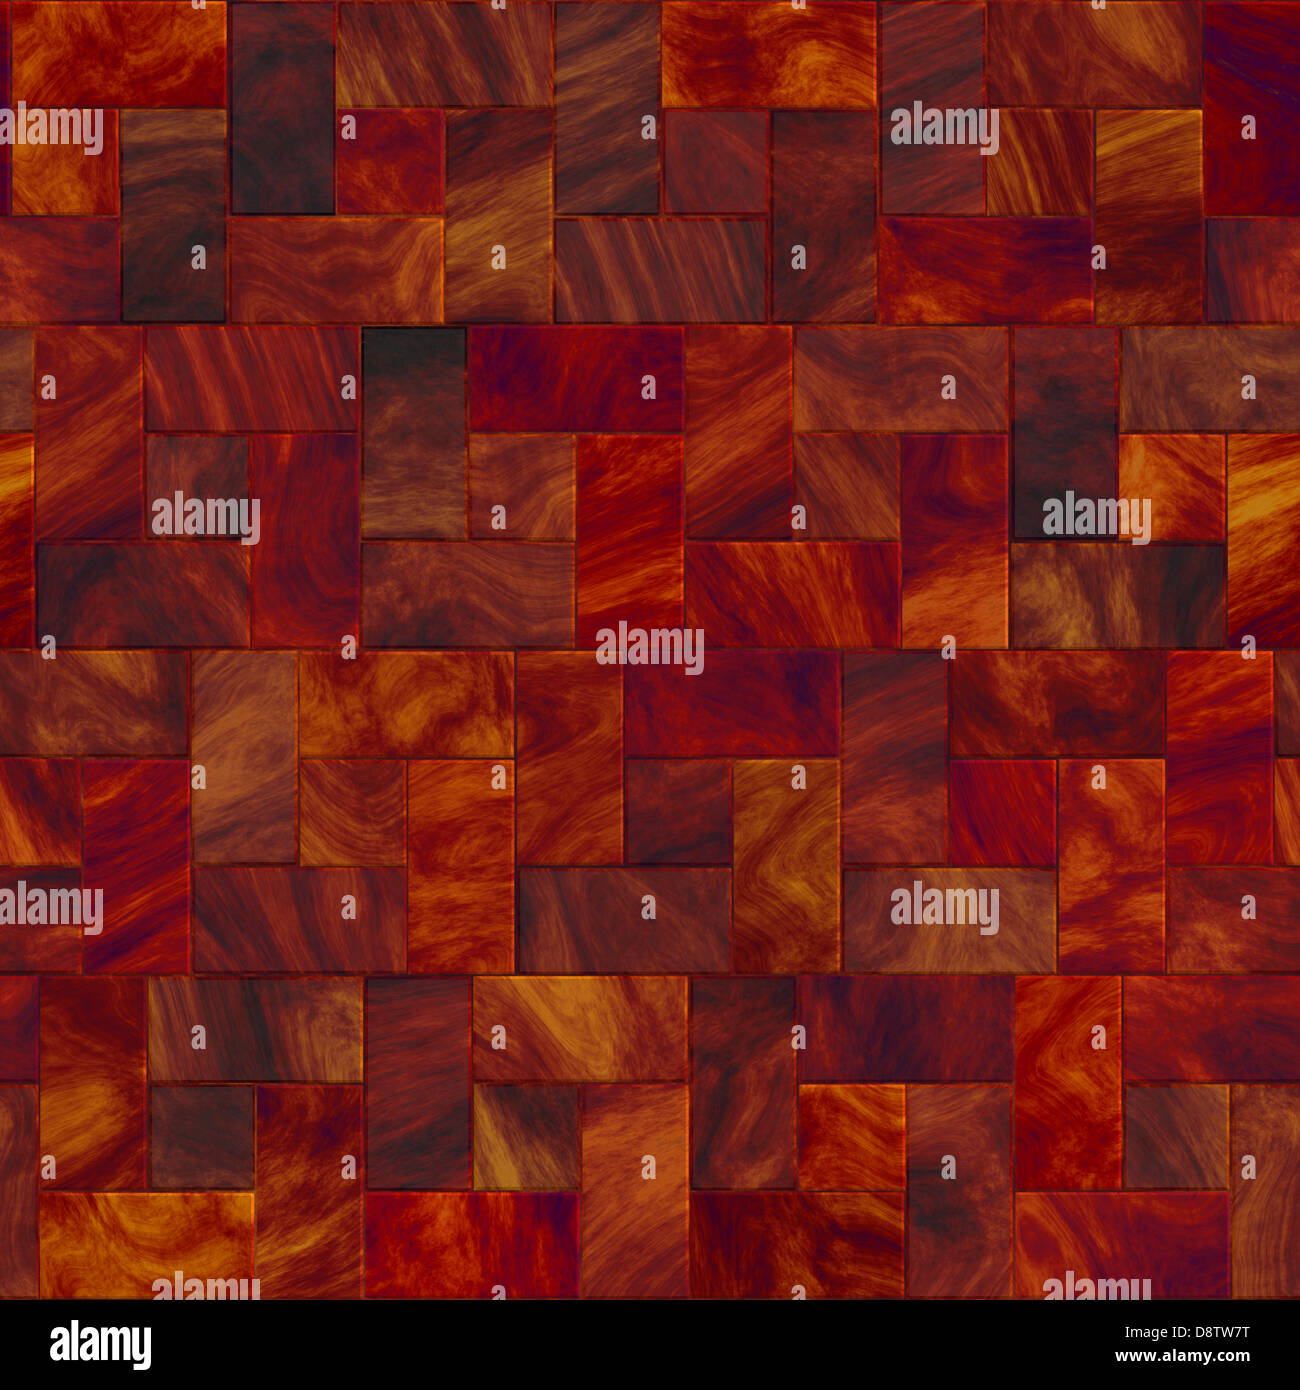 Seamless Tiles Background Stock Photo